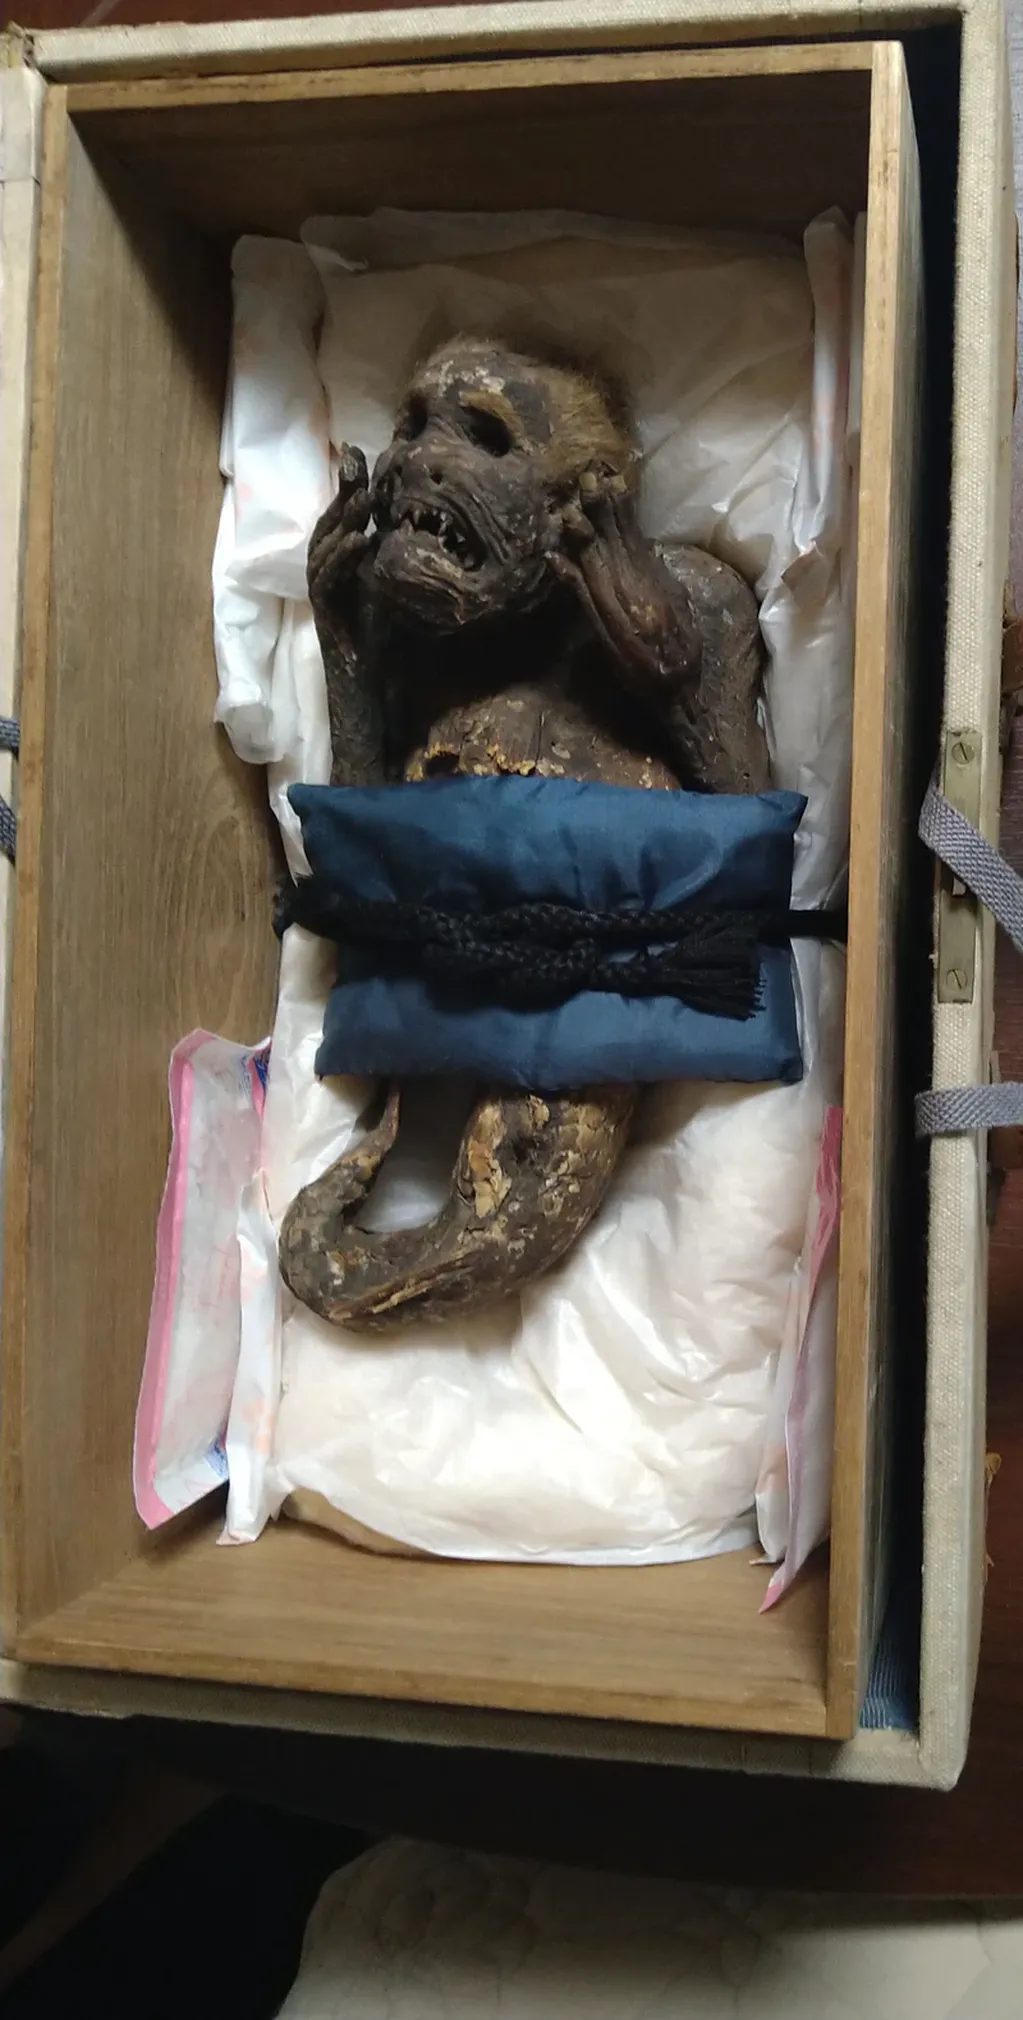 La supuesta sirena momificada, encontrada hace 300 años. Foto: Universidad de Ciencias y Artes de Kurashiki de Okayama.